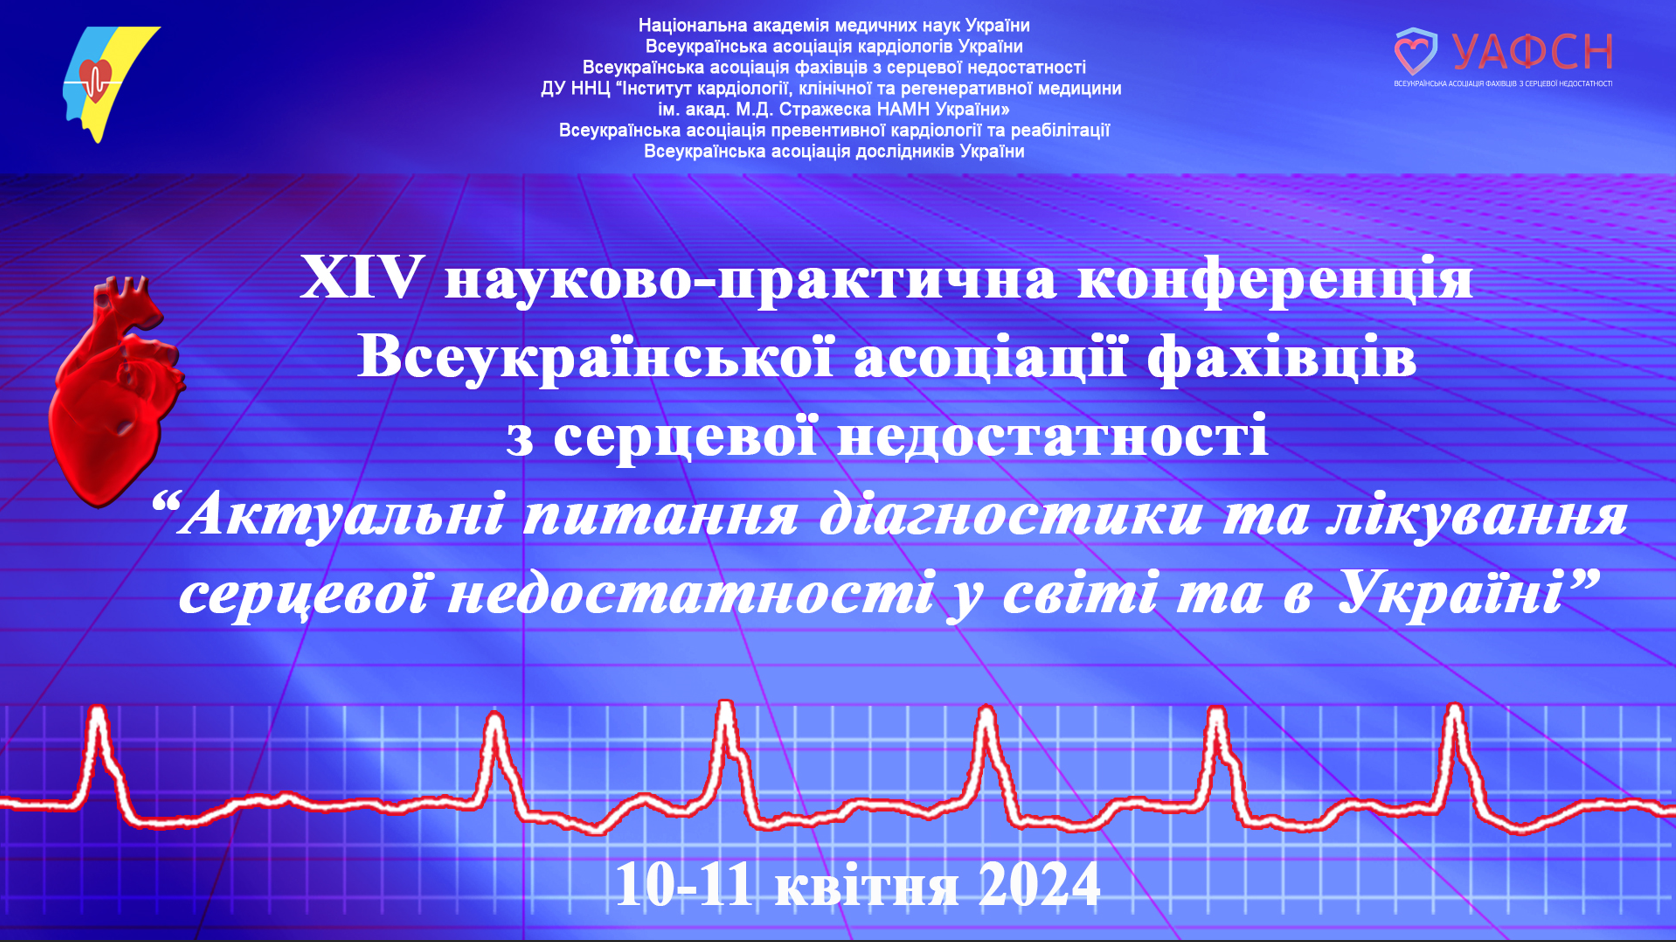 XІV науково-практична конференція Всеукраїнської асоціації фахівців з серцевої недостатності: «Актуальнi питання діагностики та лікування серцевої недостатності у світі та в Україні»